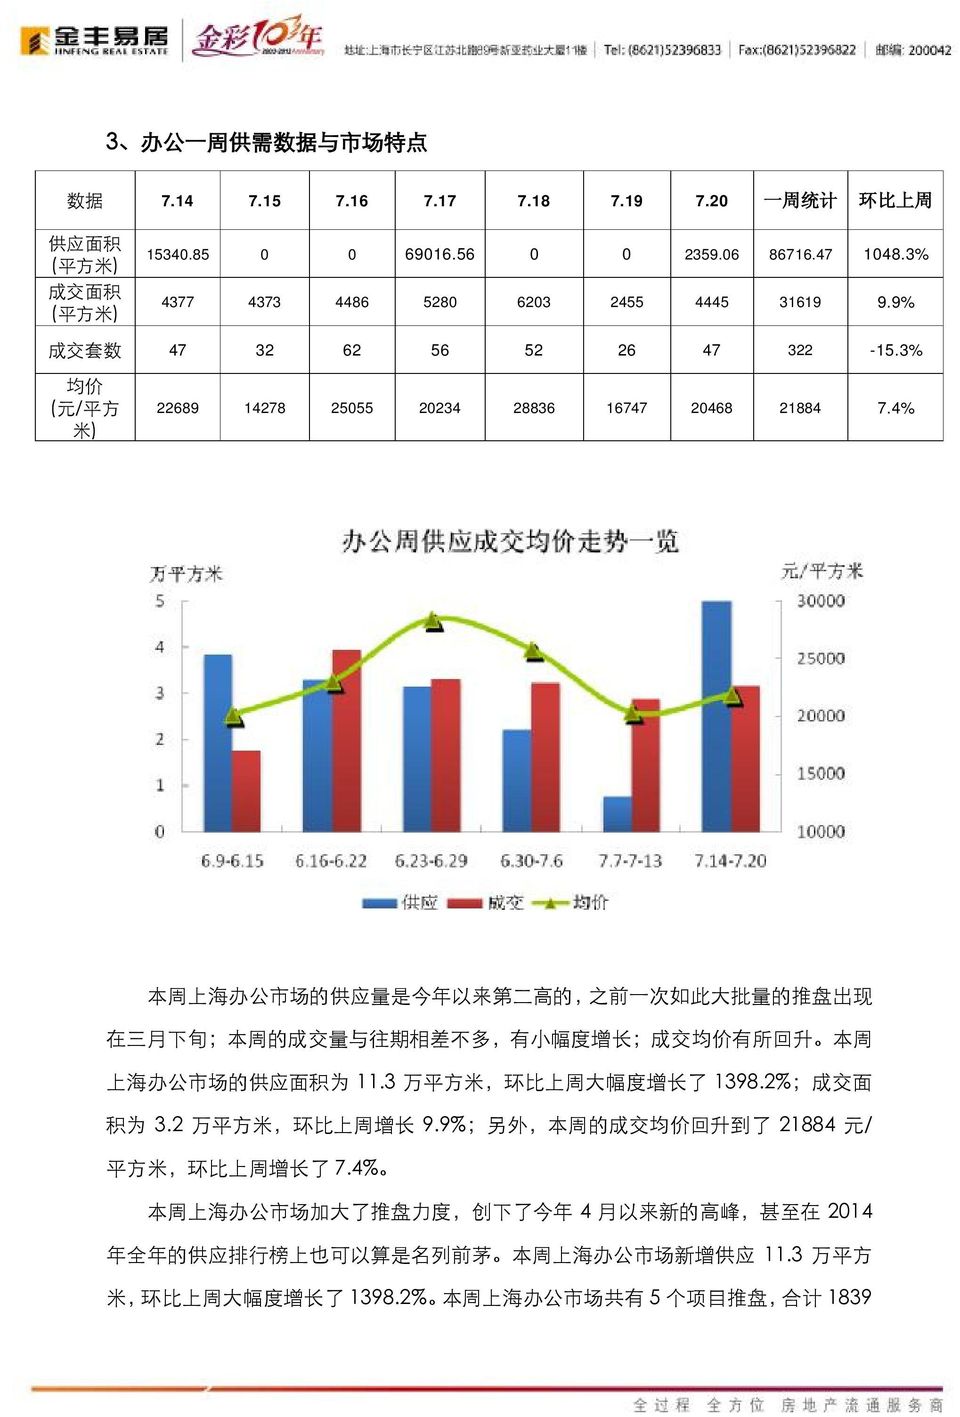 4% 本 周 上 海 办 公 市 场 的 供 应 量 是 今 年 以 来 第 二 高 的, 之 前 一 次 如 此 大 批 量 的 推 盘 出 现 在 三 月 下 旬 ; 本 周 的 成 交 量 与 往 期 相 差 不 多, 有 小 幅 度 增 长 ; 成 交 均 价 有 所 回 升 本 周 上 海 办 公 市 场 的 供 应 面 积 为 11.